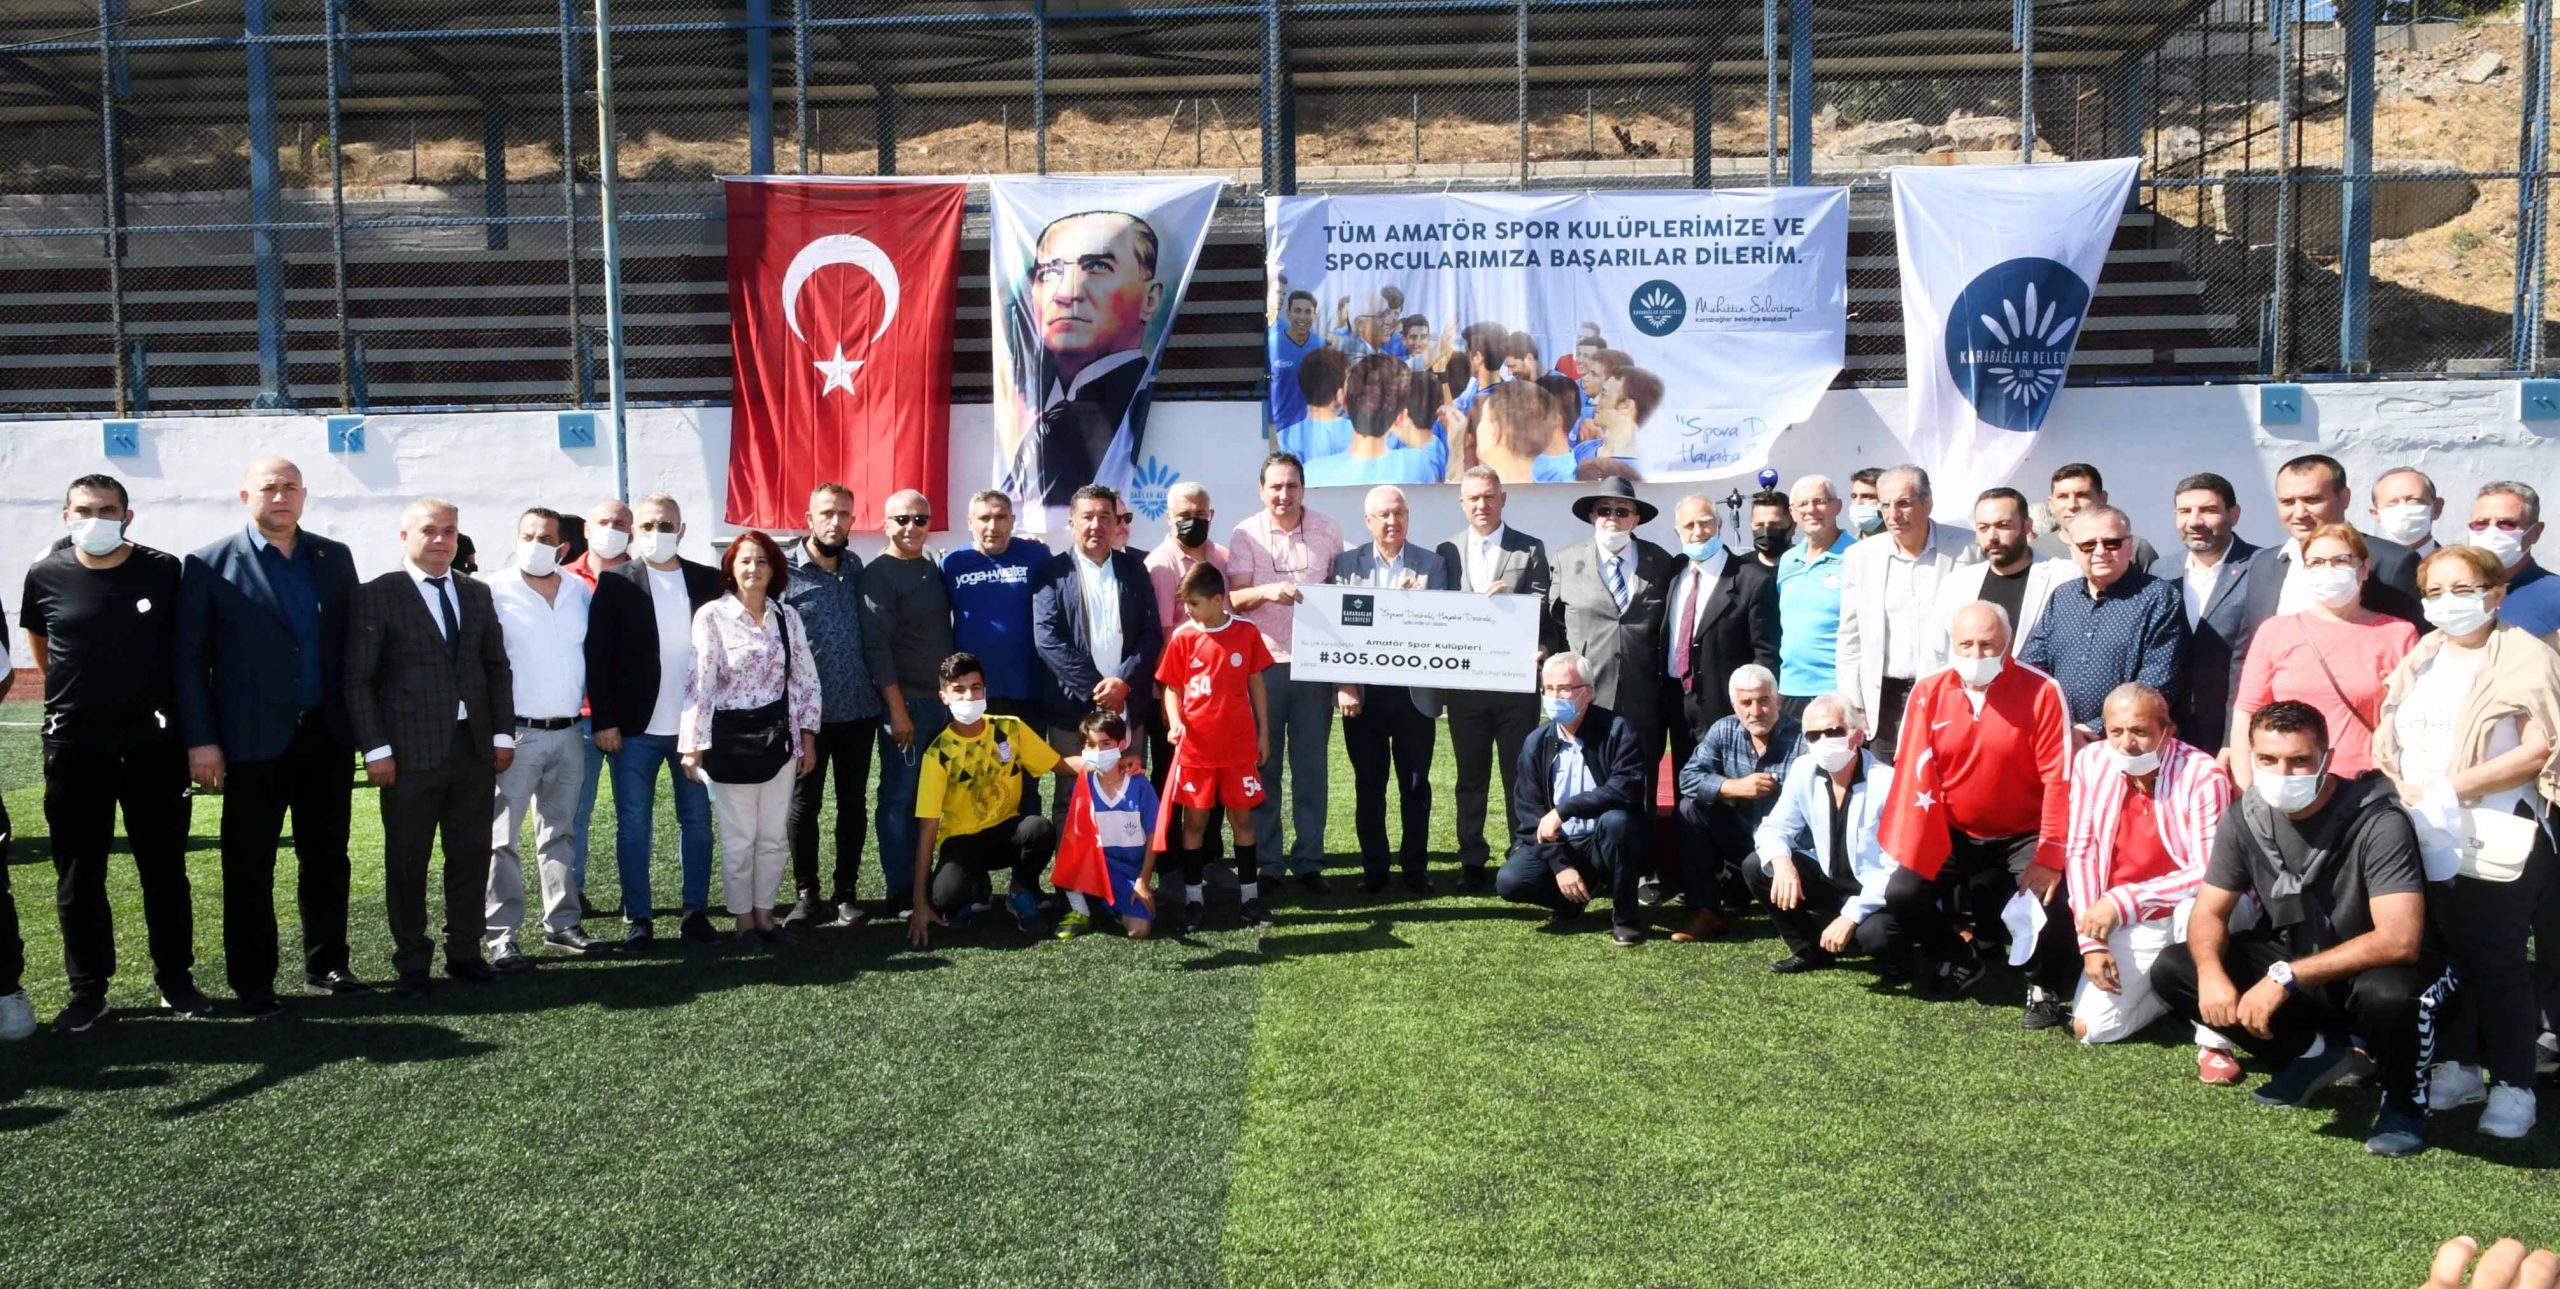 Karabağlar’da amatör spor kulüplerine coşkulu açılış